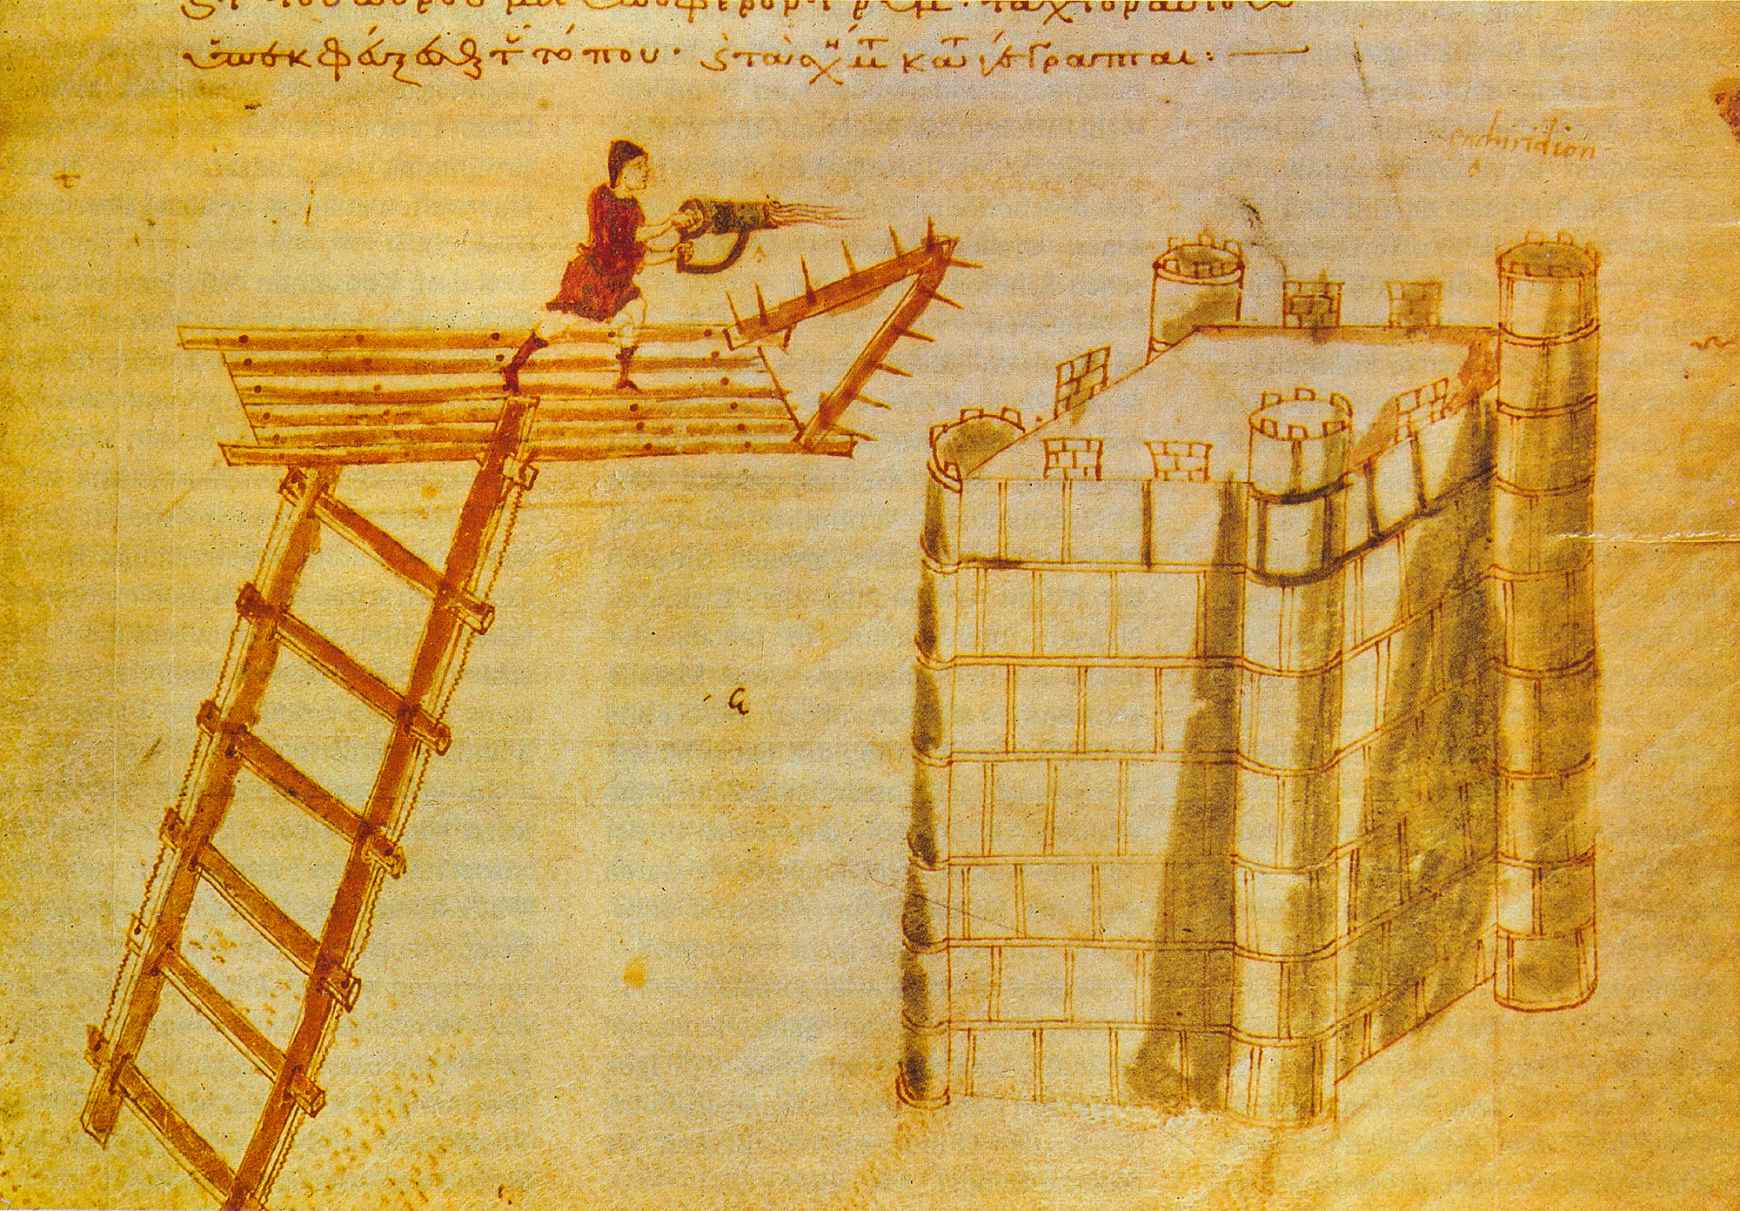 Uçan bir köprünün tepesinden bir kaleye karşı kullanılan taşınabilir bir alev makinesi olan cheirosiphōn ("hand-siphōn") kullanımı. Bizans Kahramanının Poliorcetica'sından Aydınlatma.